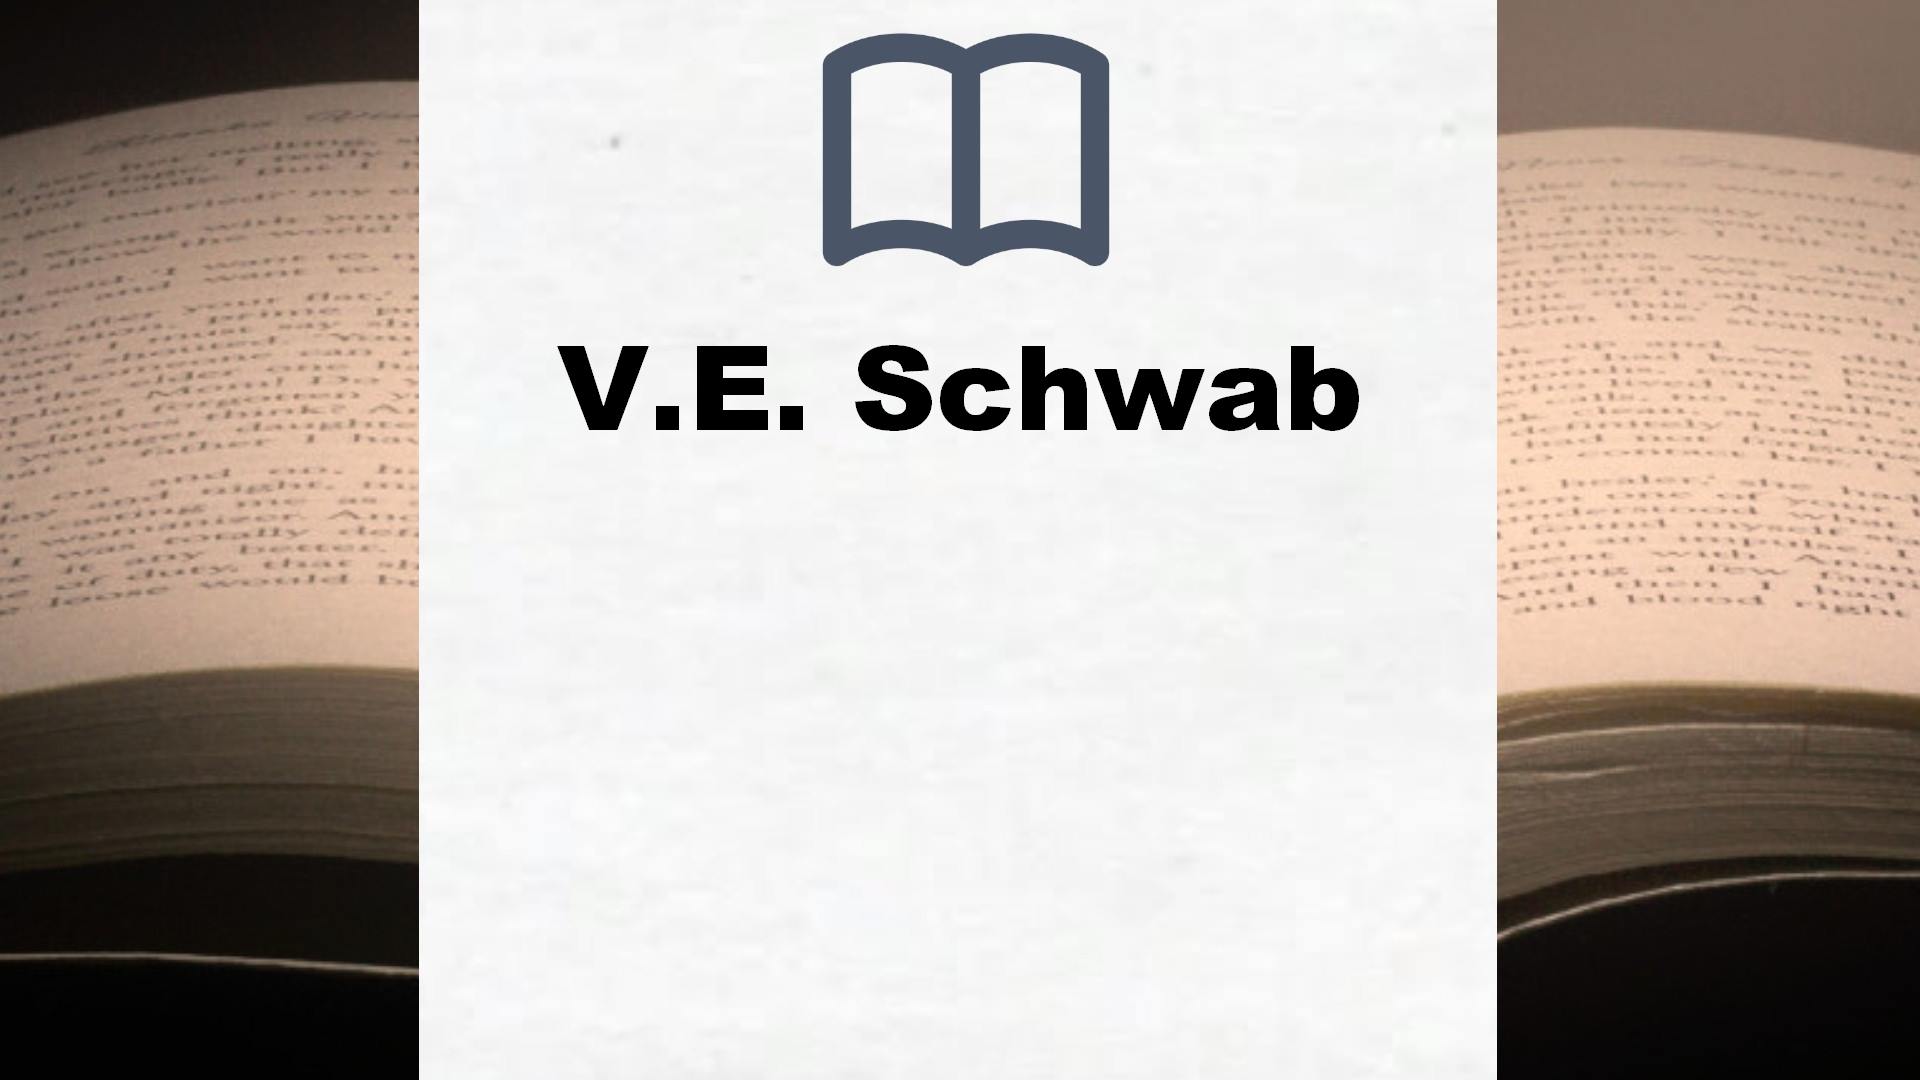 Libros V.E. Schwab